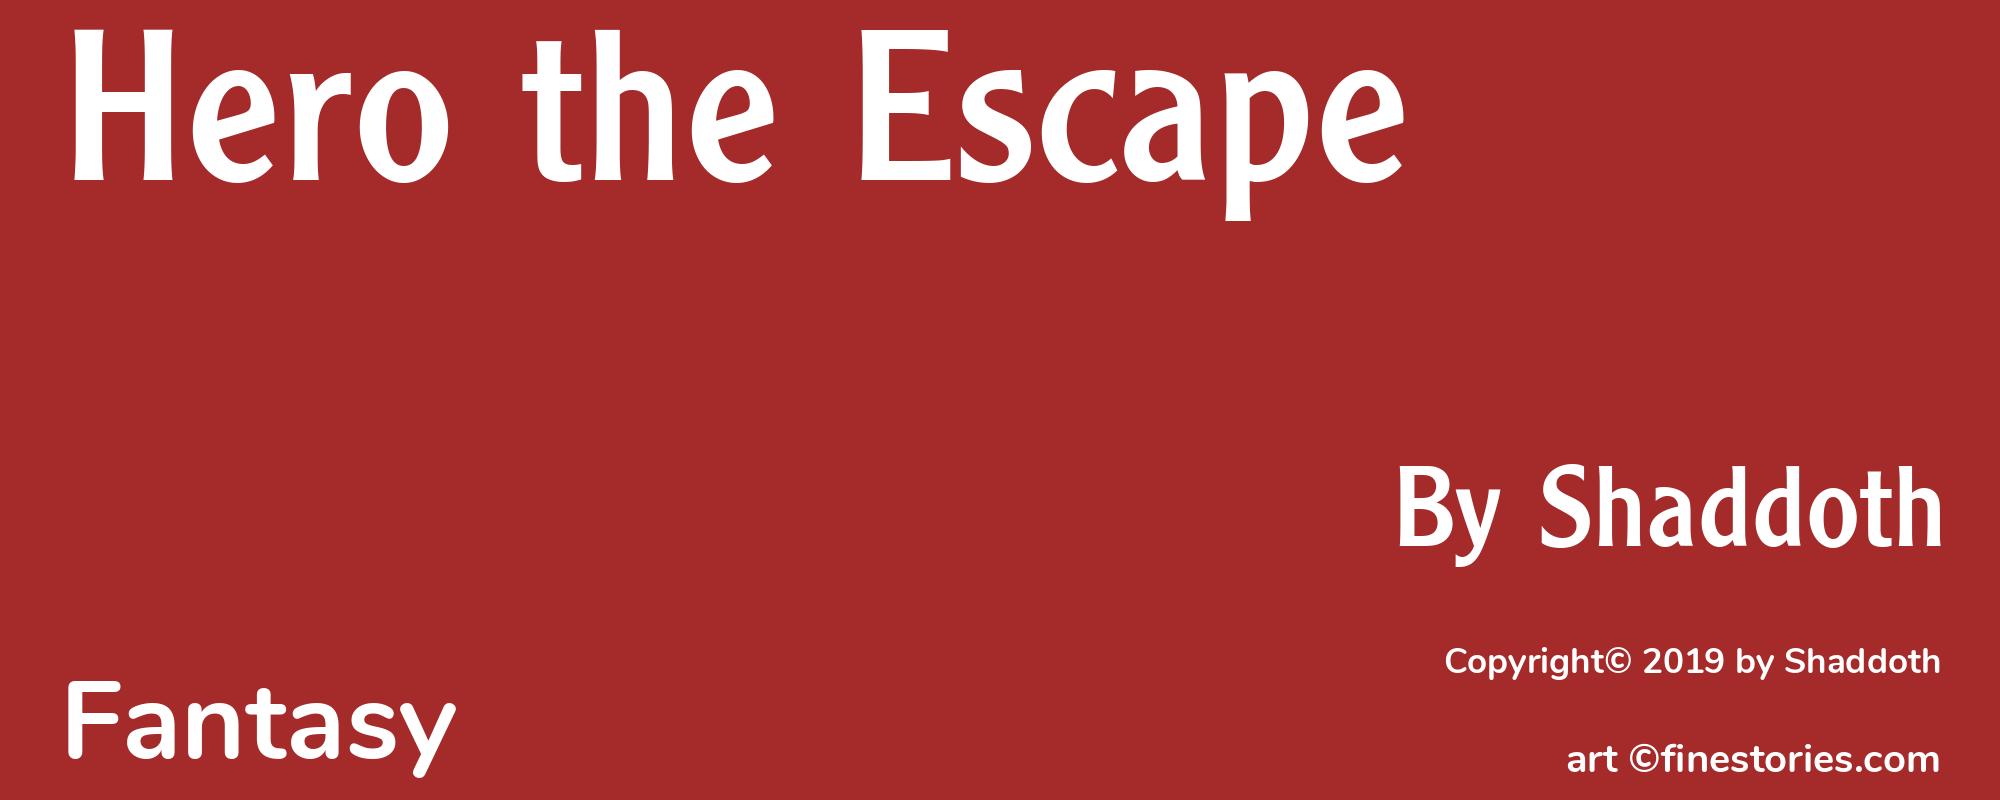 Hero the Escape - Cover